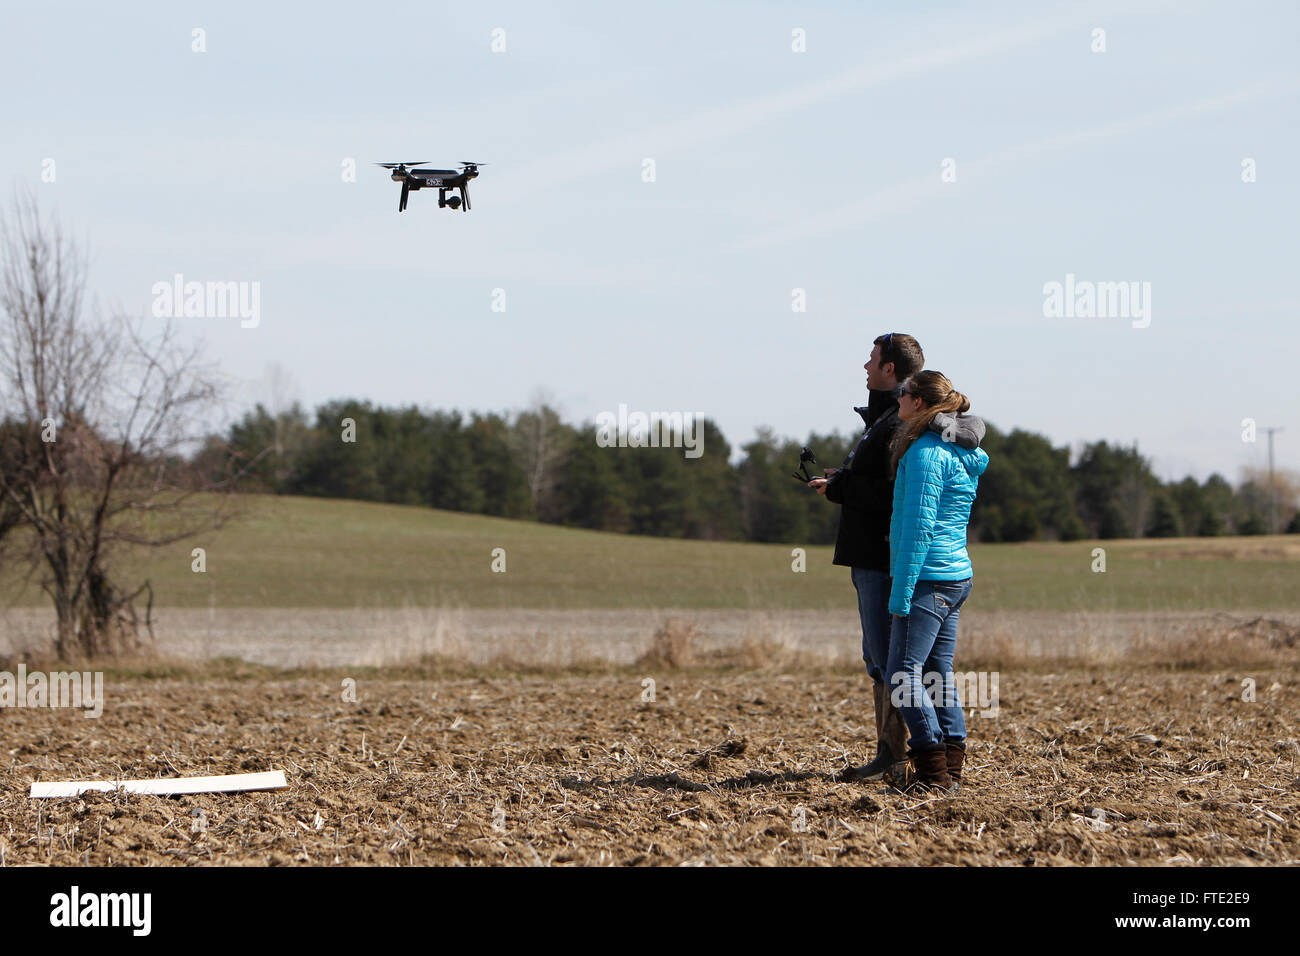 Deux personnes aux commandes d'un drone au-dessus d'un champ. Banque D'Images